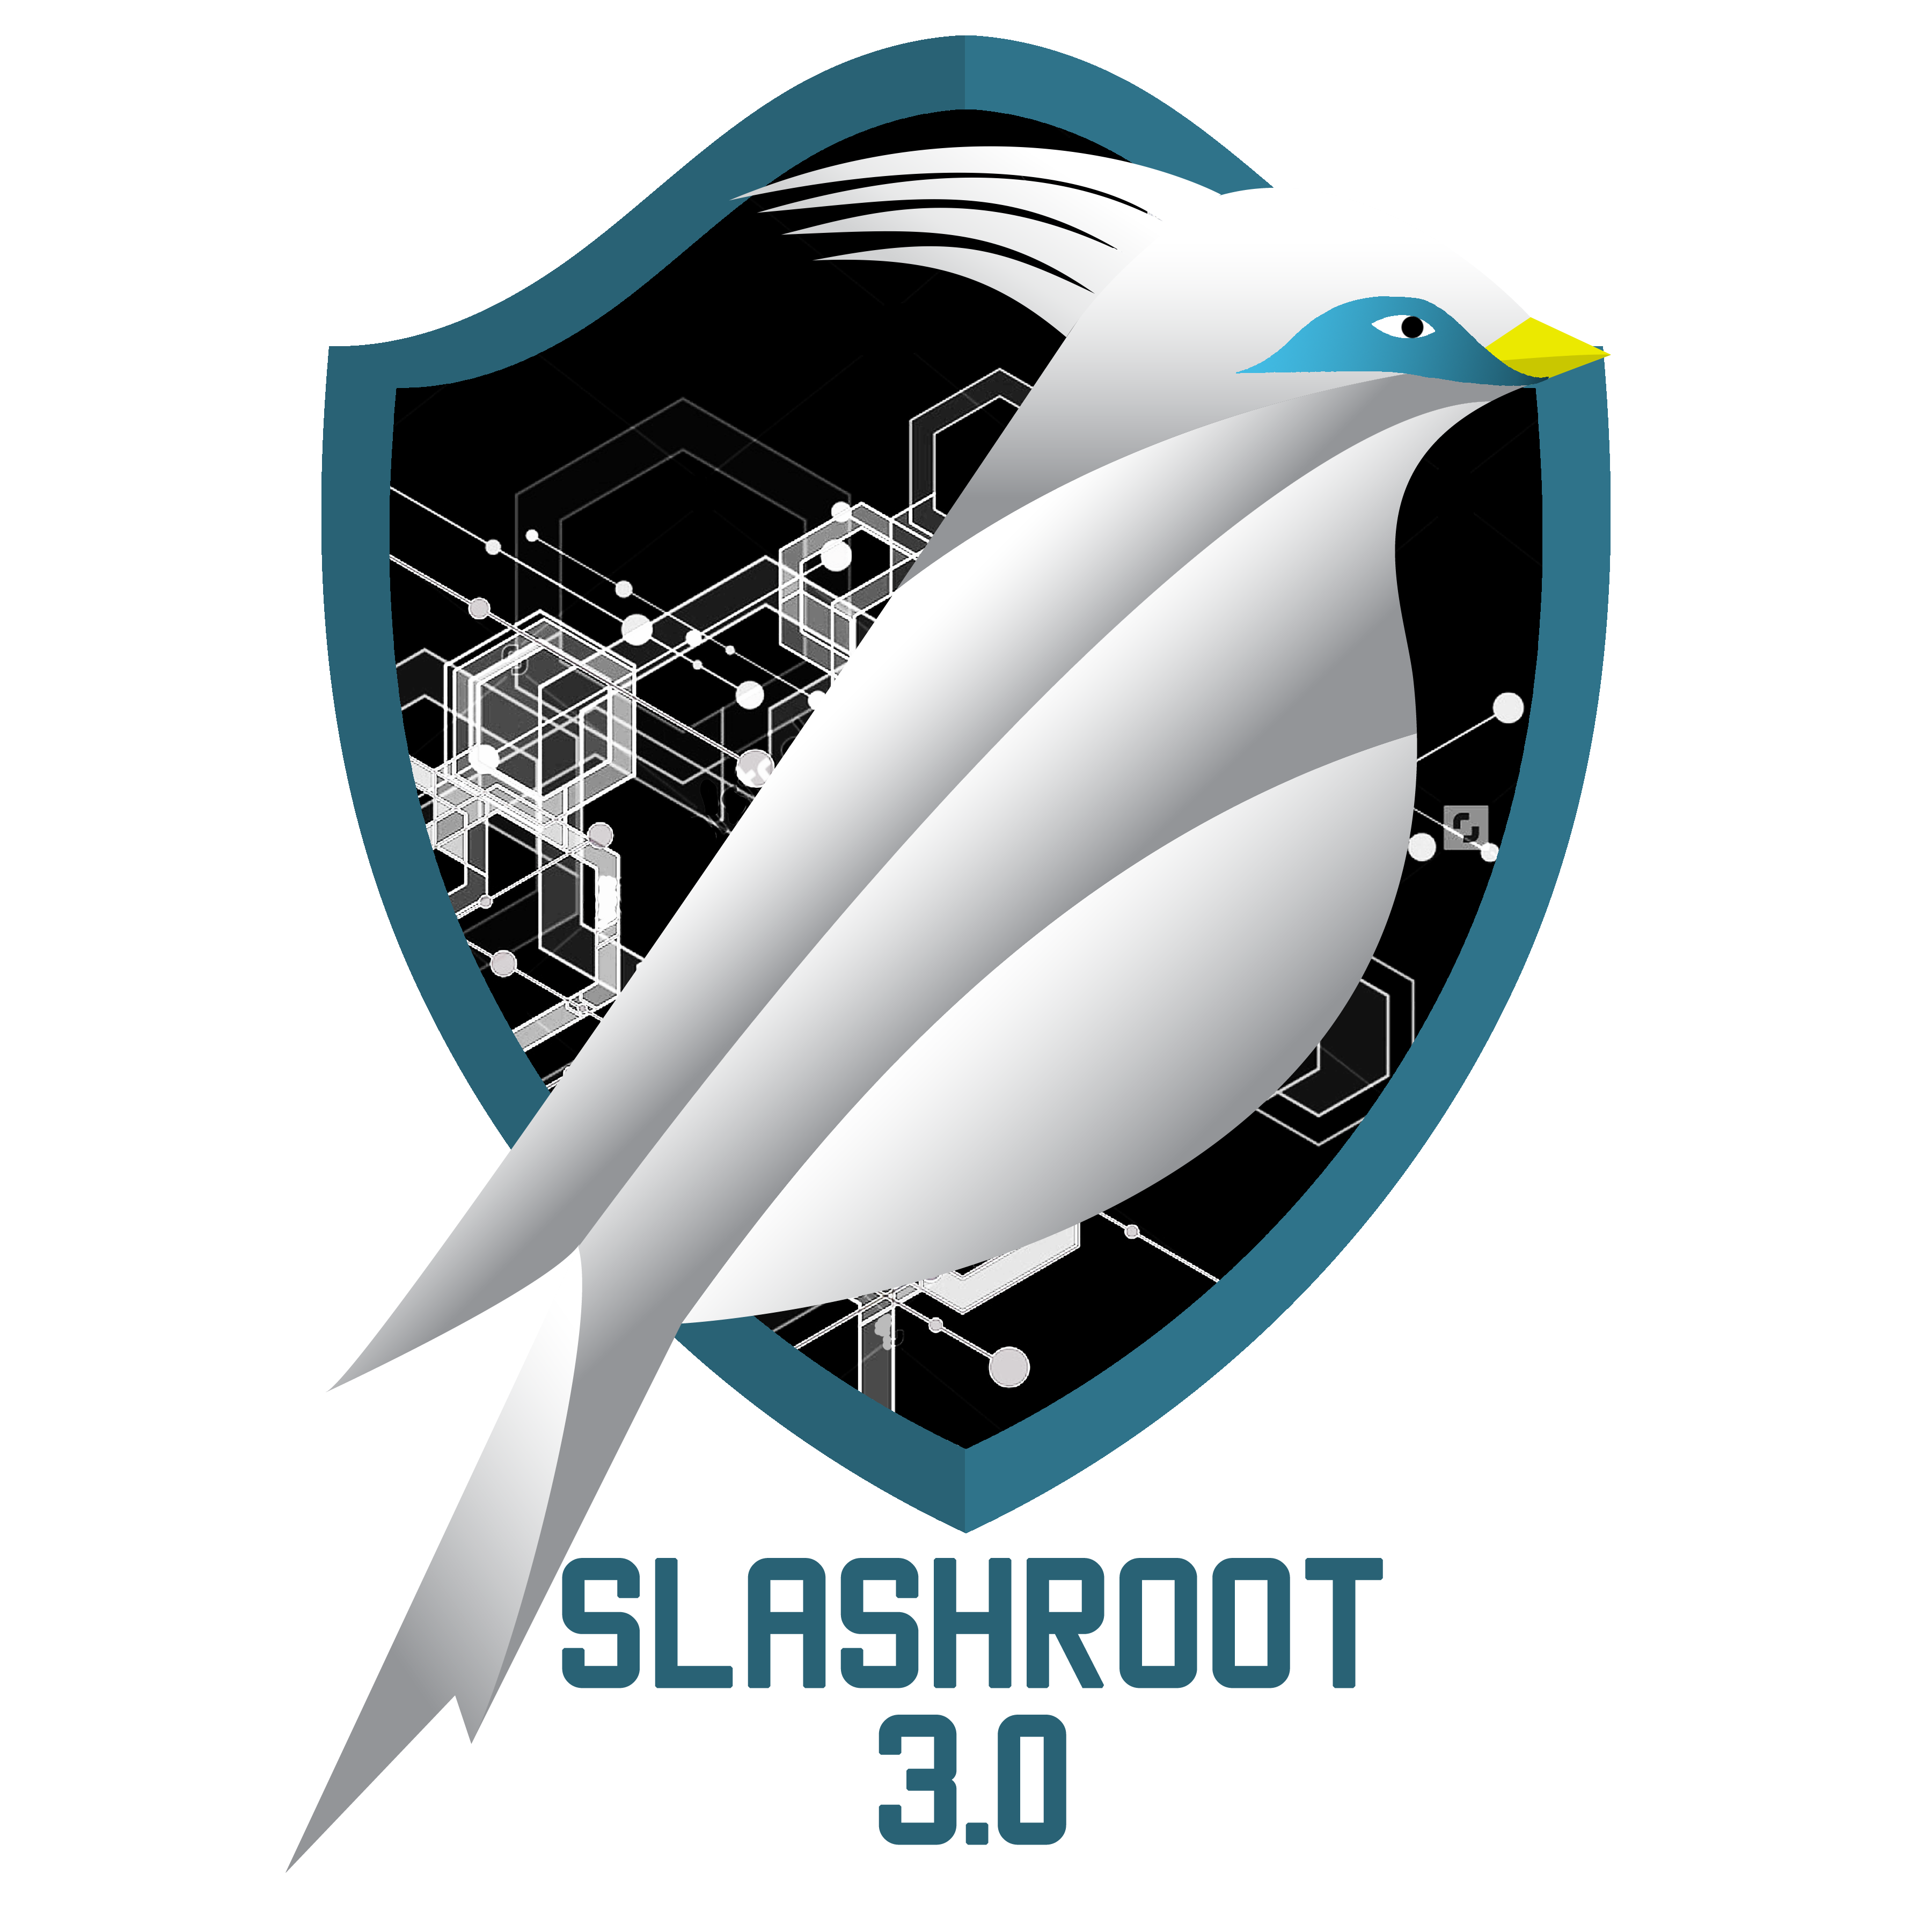 Slashroot 3.0